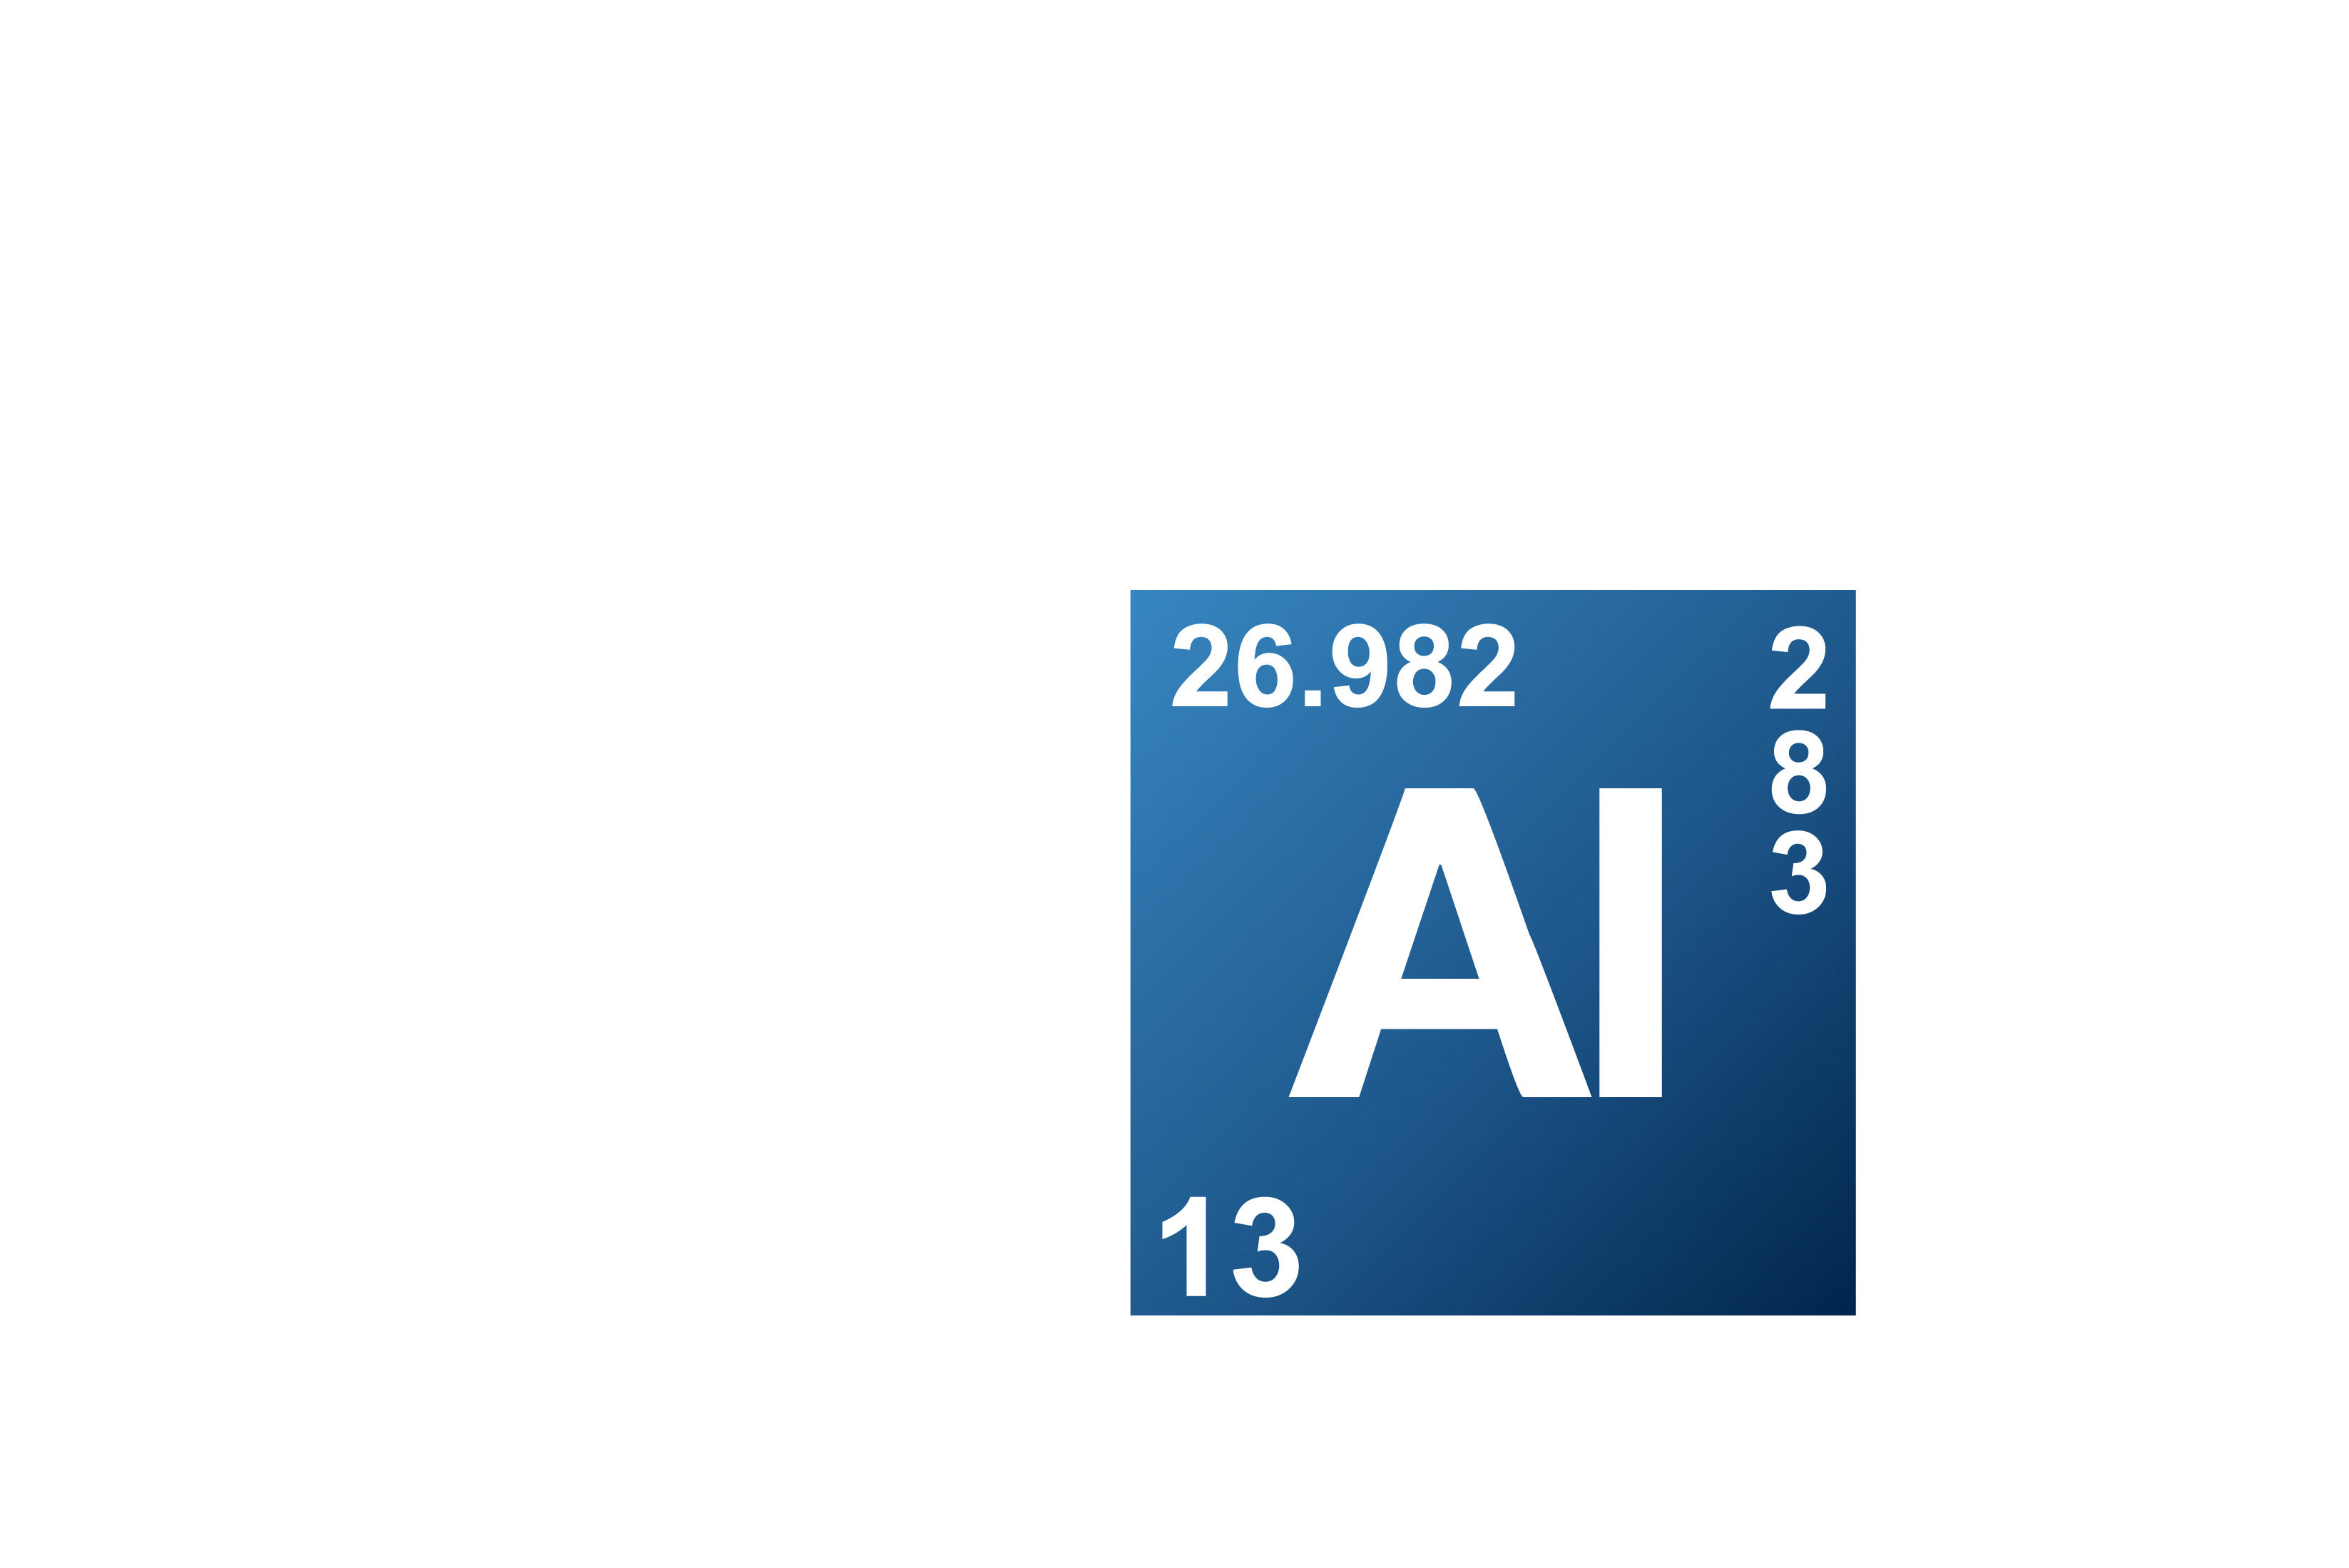 AD metals